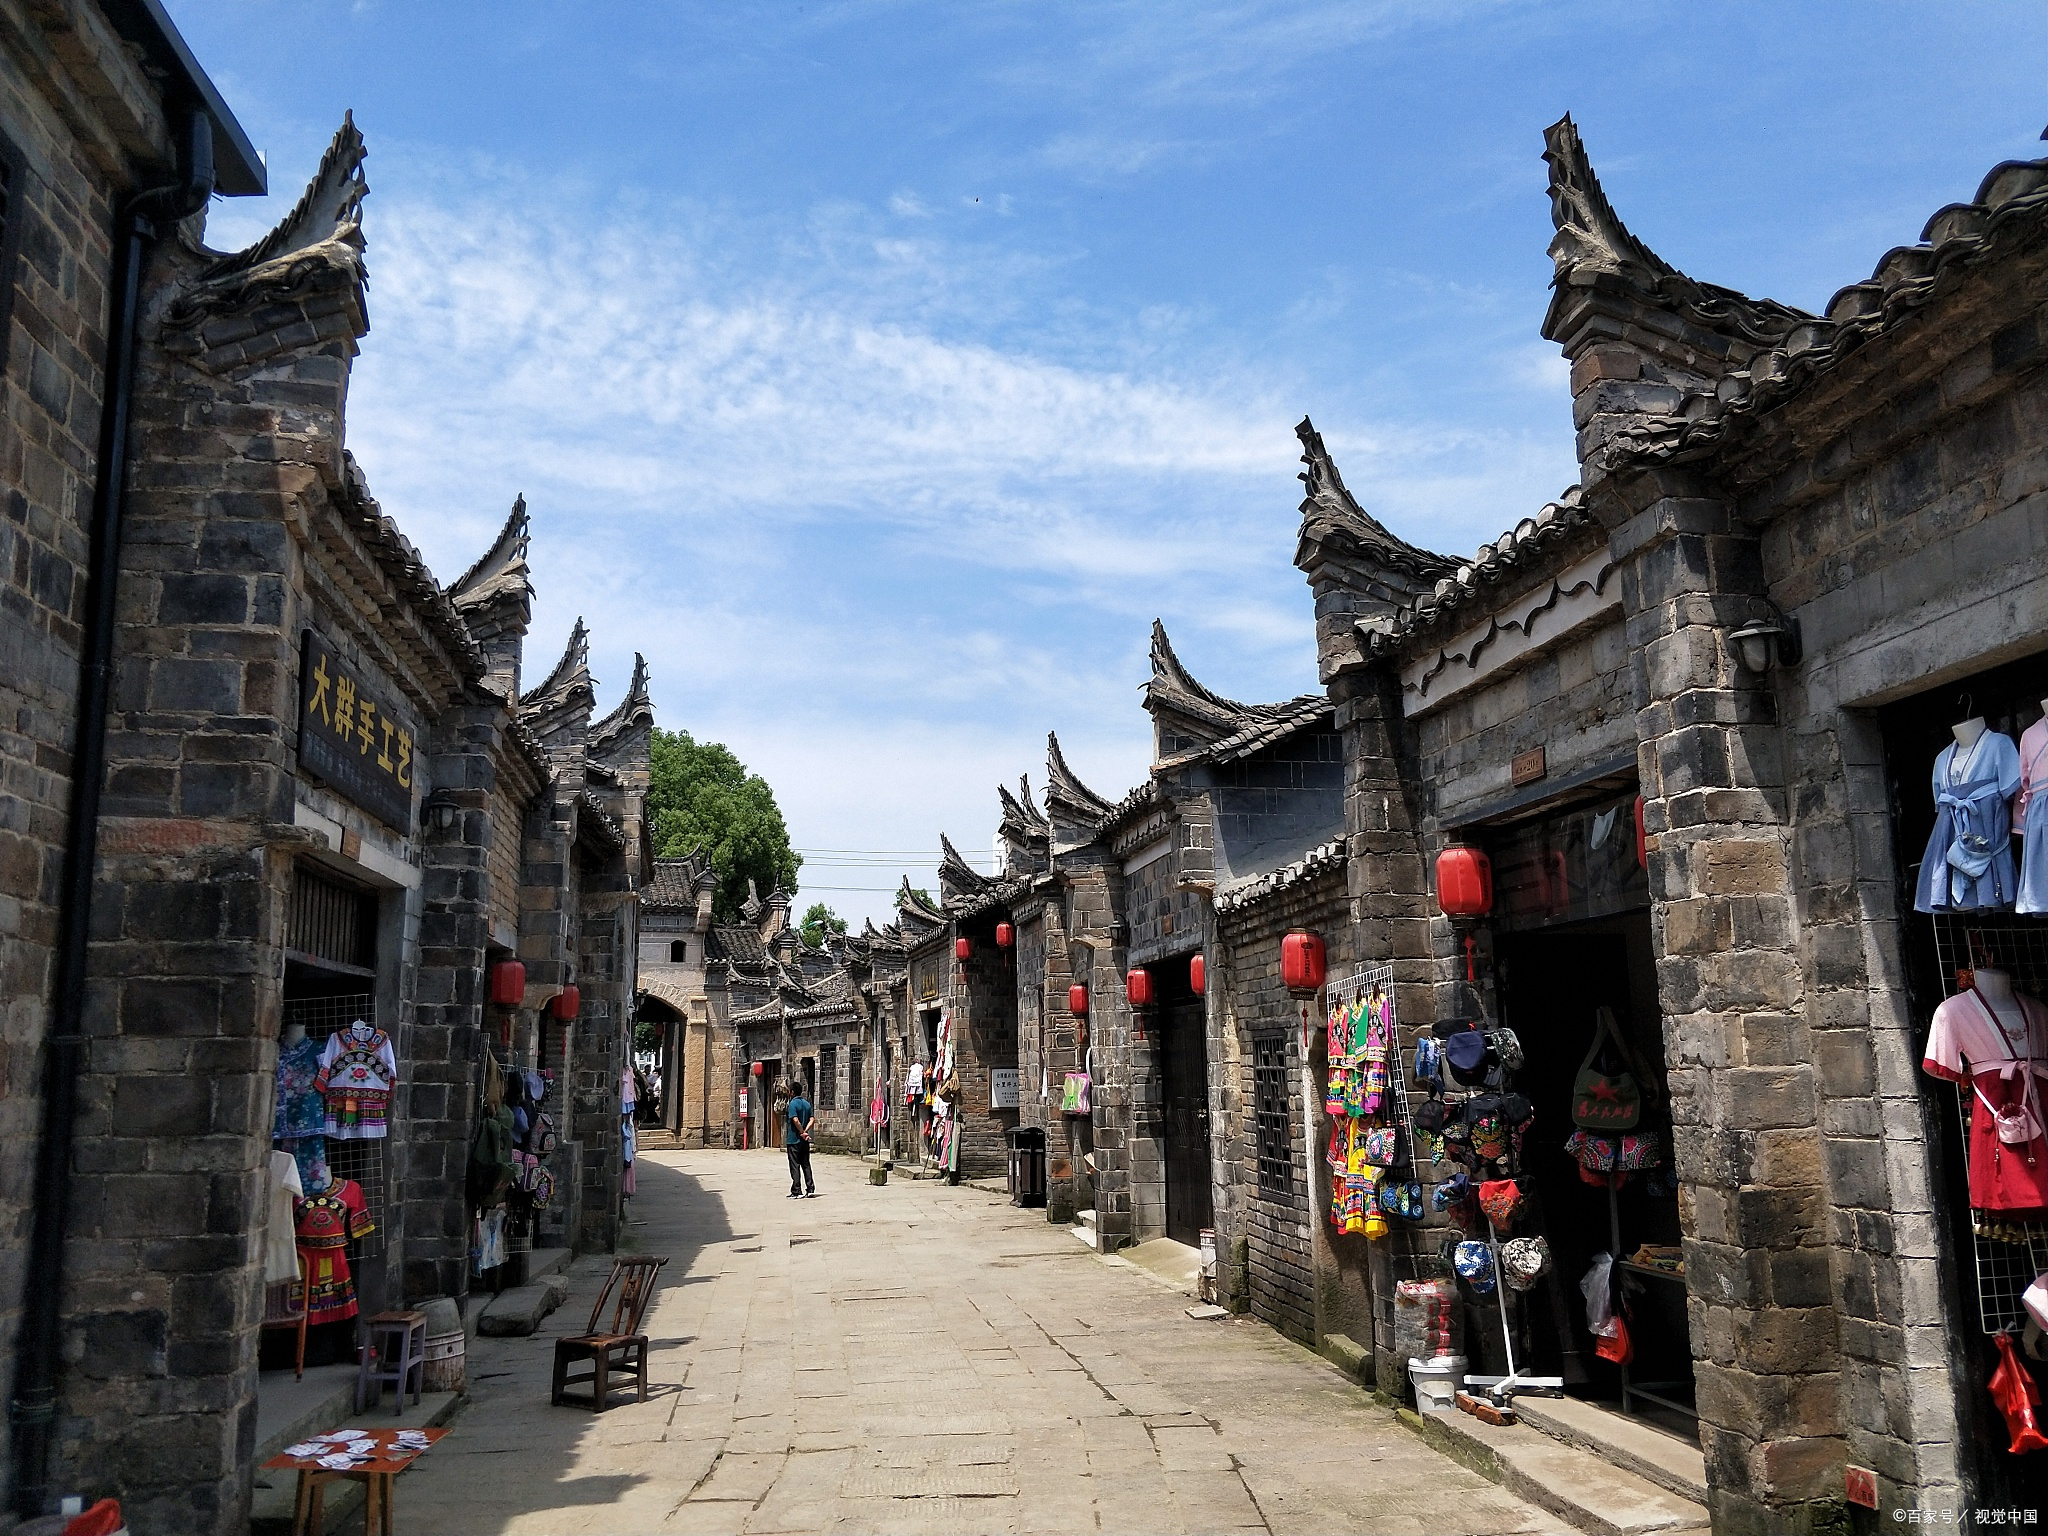 常德,一个美丽而神秘的城市,位于湖南省西北部,拥有悠久的历史和丰富